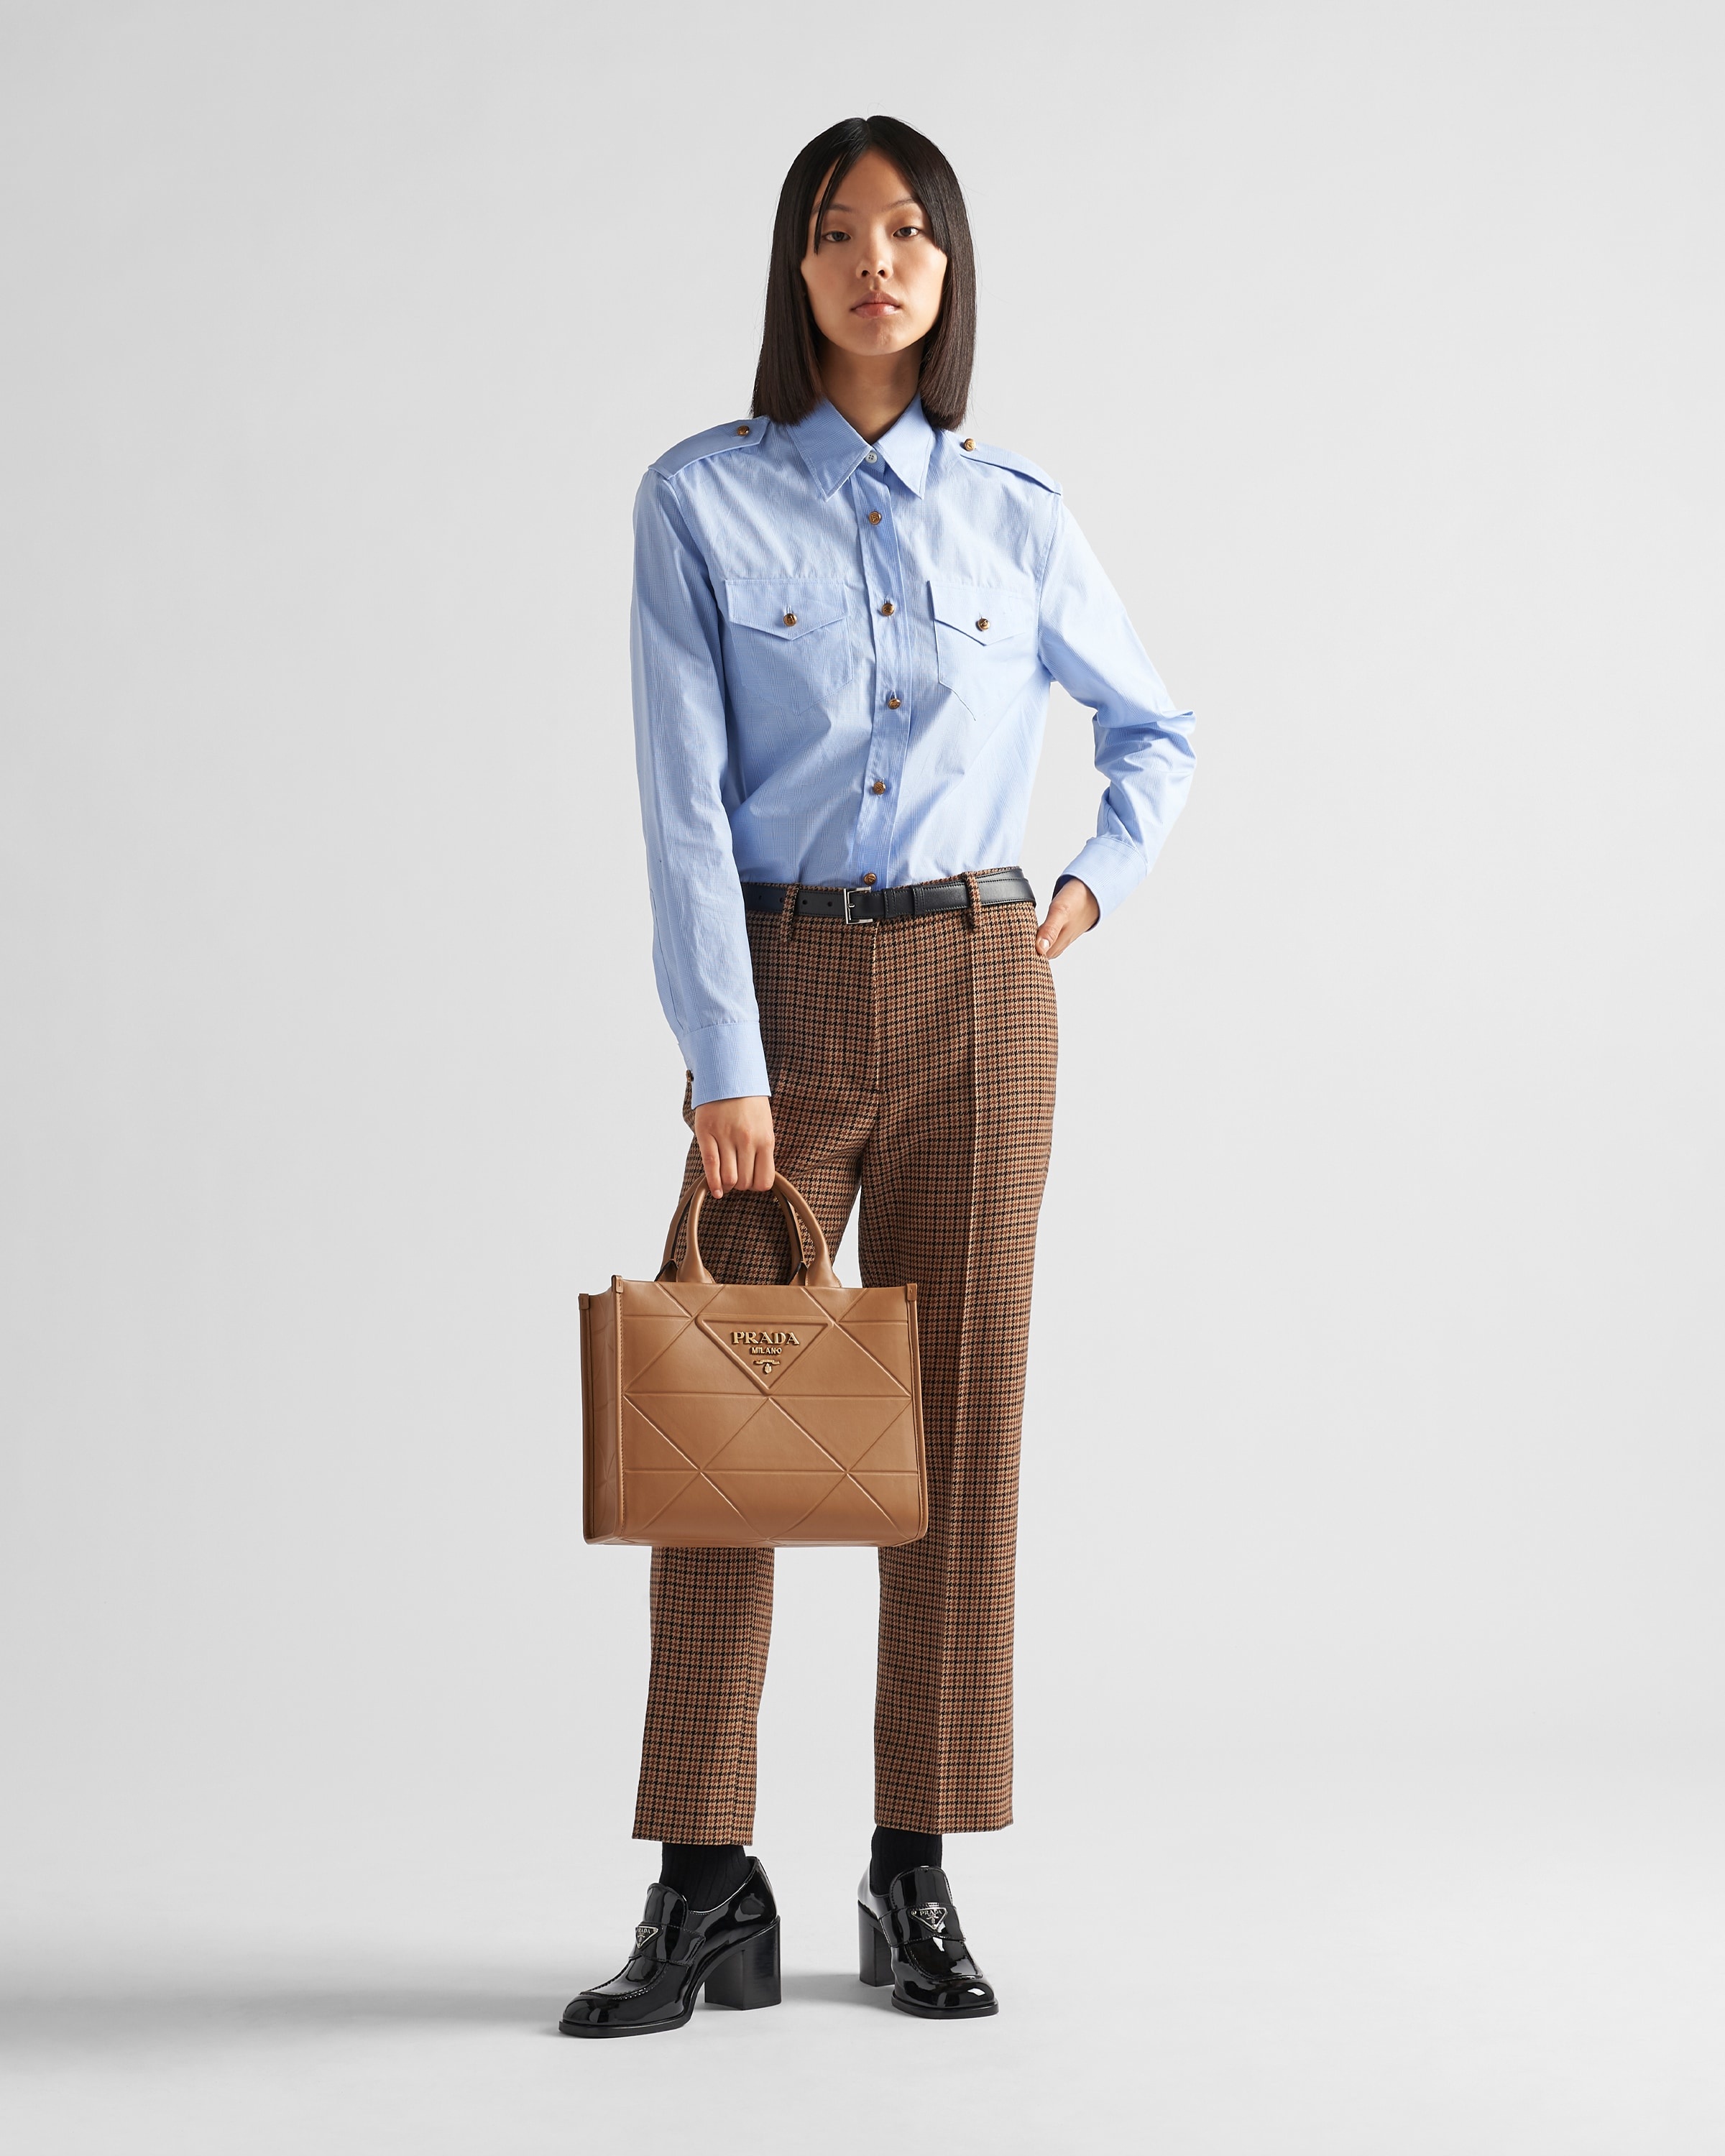 Prada Galleria Small Handbag in Brown